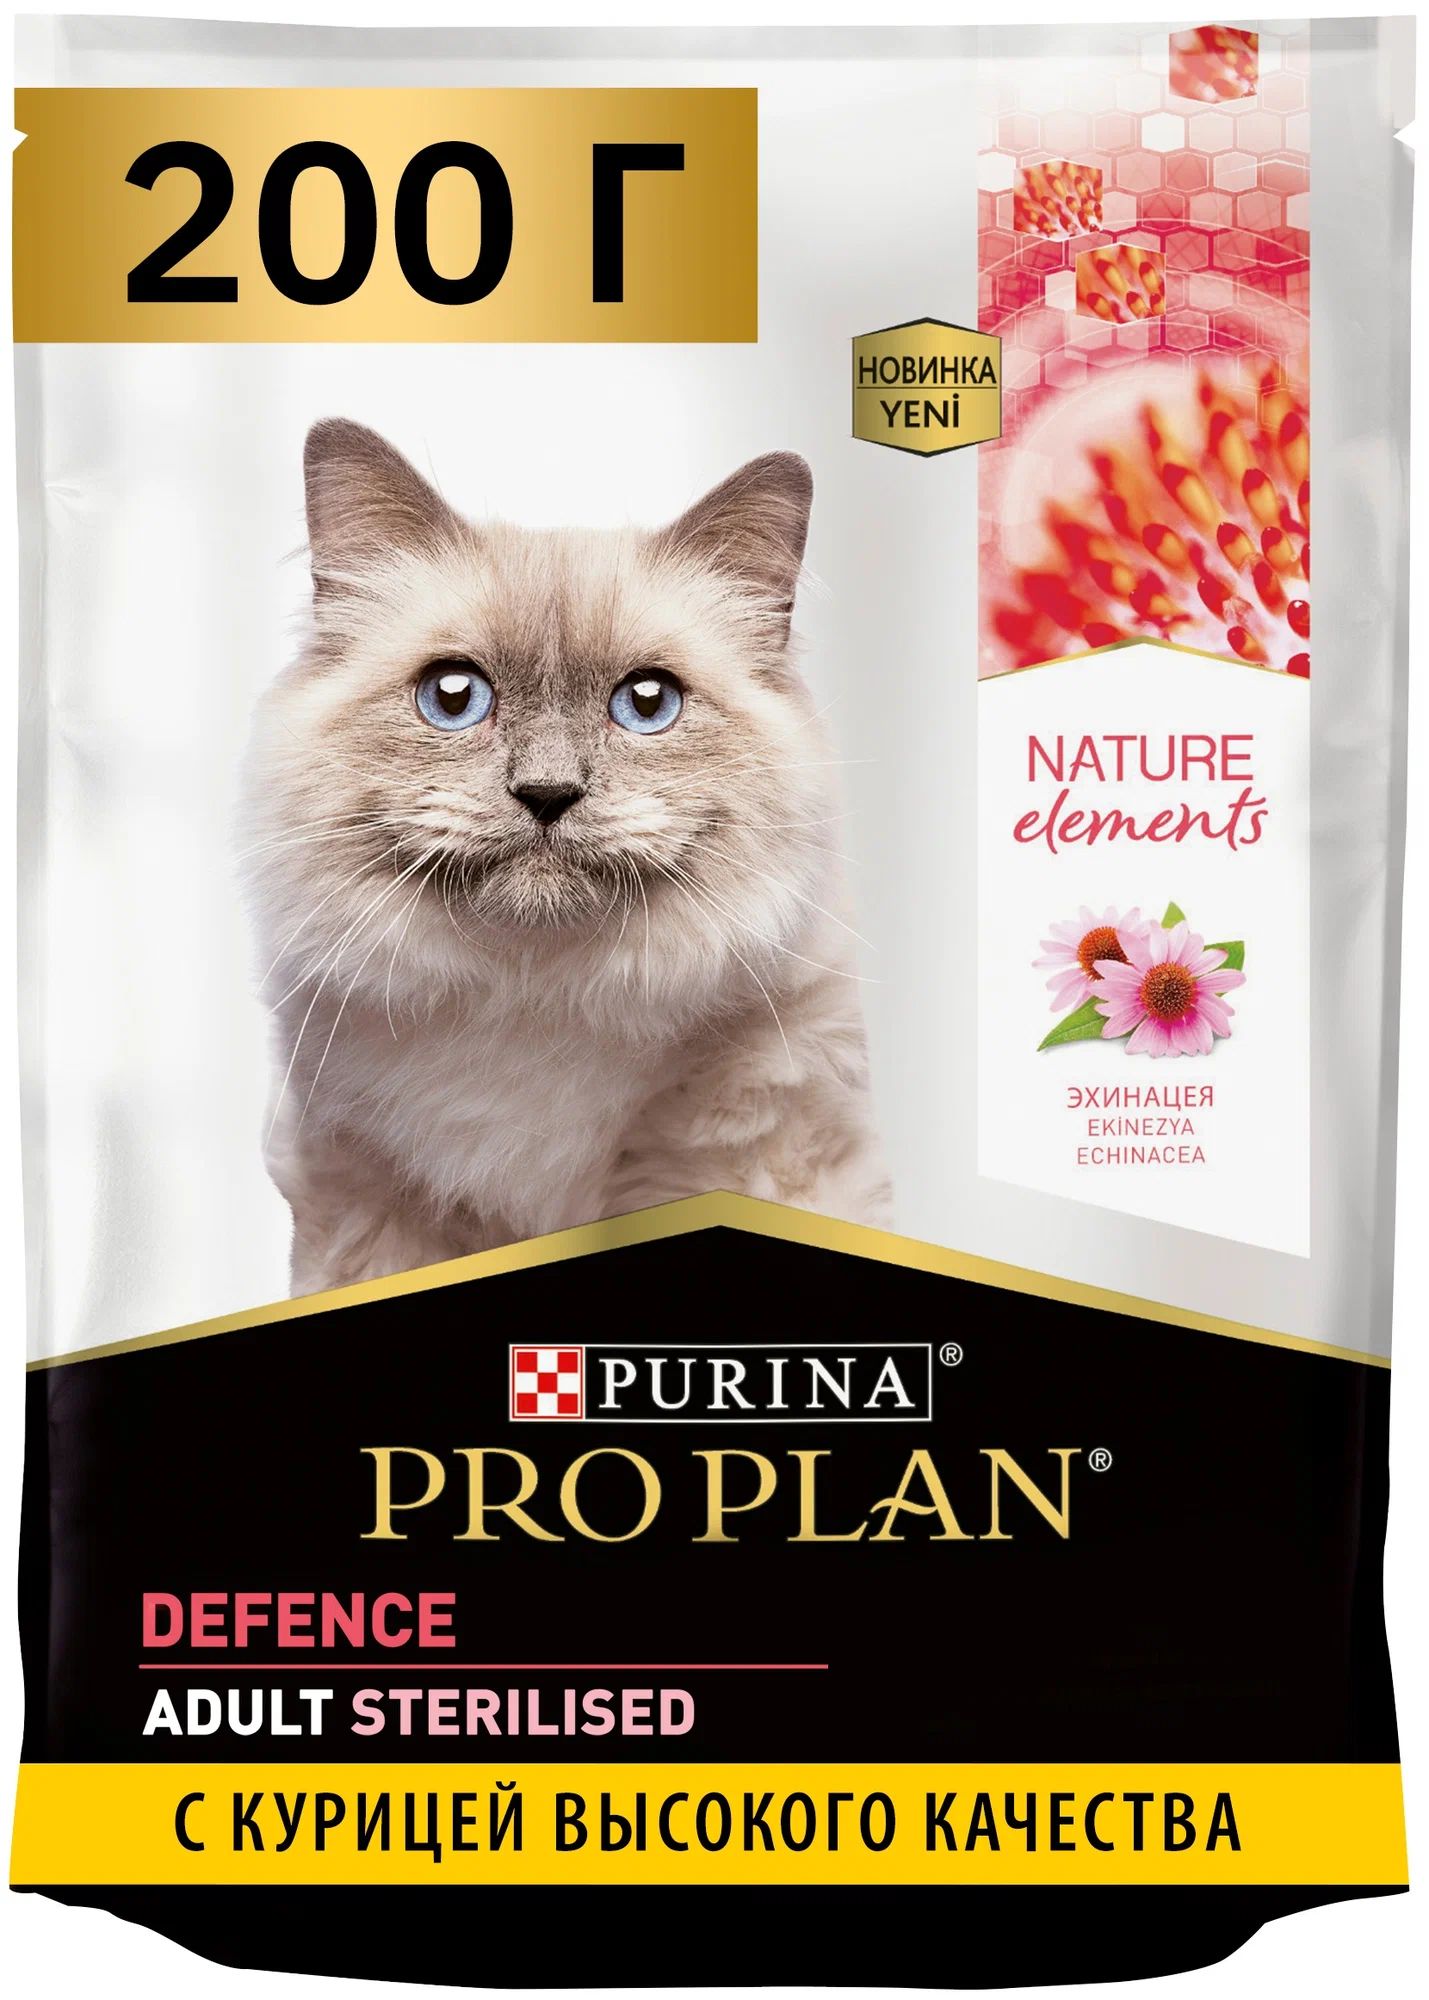 Сухой корм для кошек Purina Pro Plan Nature Elements,  для стерилизованных, курица, 200 г